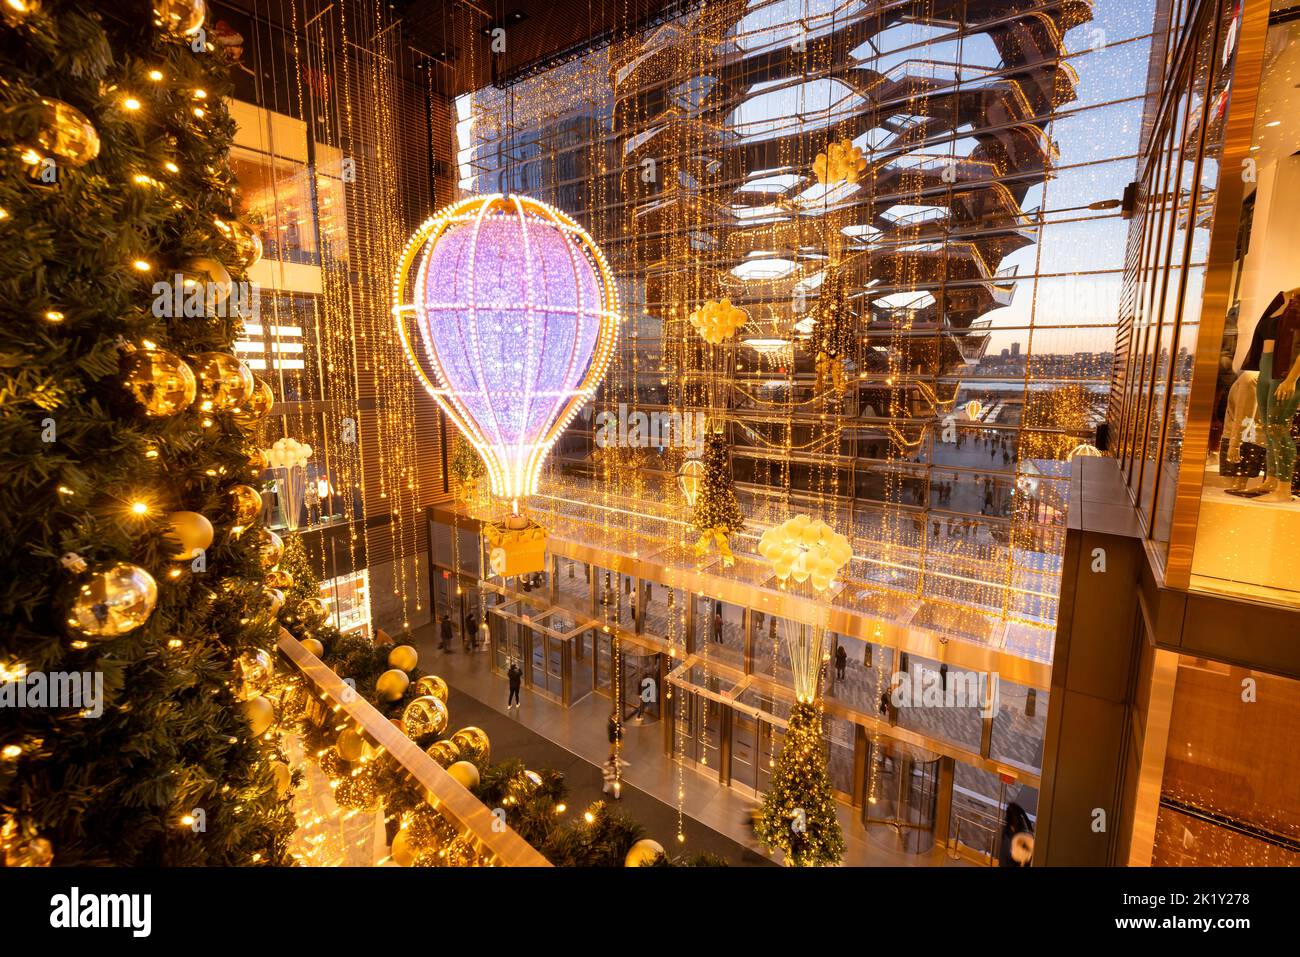 Intérieur du centre commercial Hudson yards avec décorations de Noël illuminées et vue sur le bateau (en soirée). Midtown West, Manhattan, New York Banque D'Images